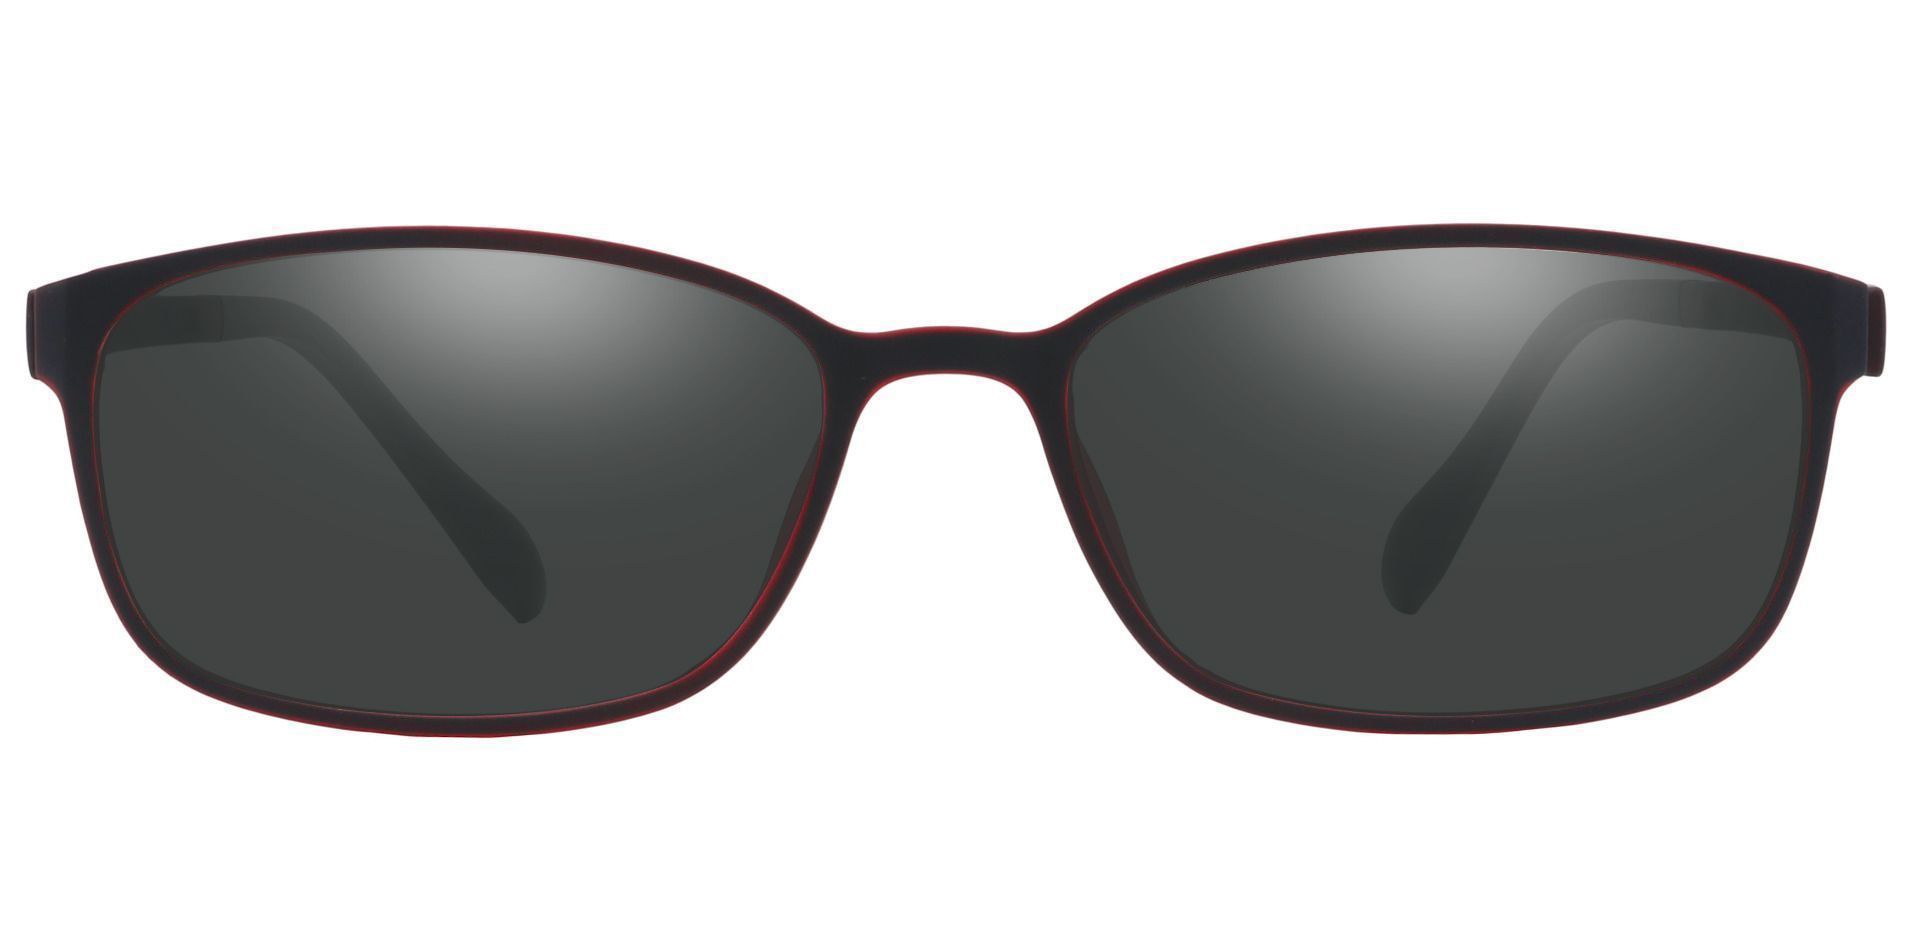 Merlot Rectangle Reading Sunglasses - Red Frame With Gray Lenses